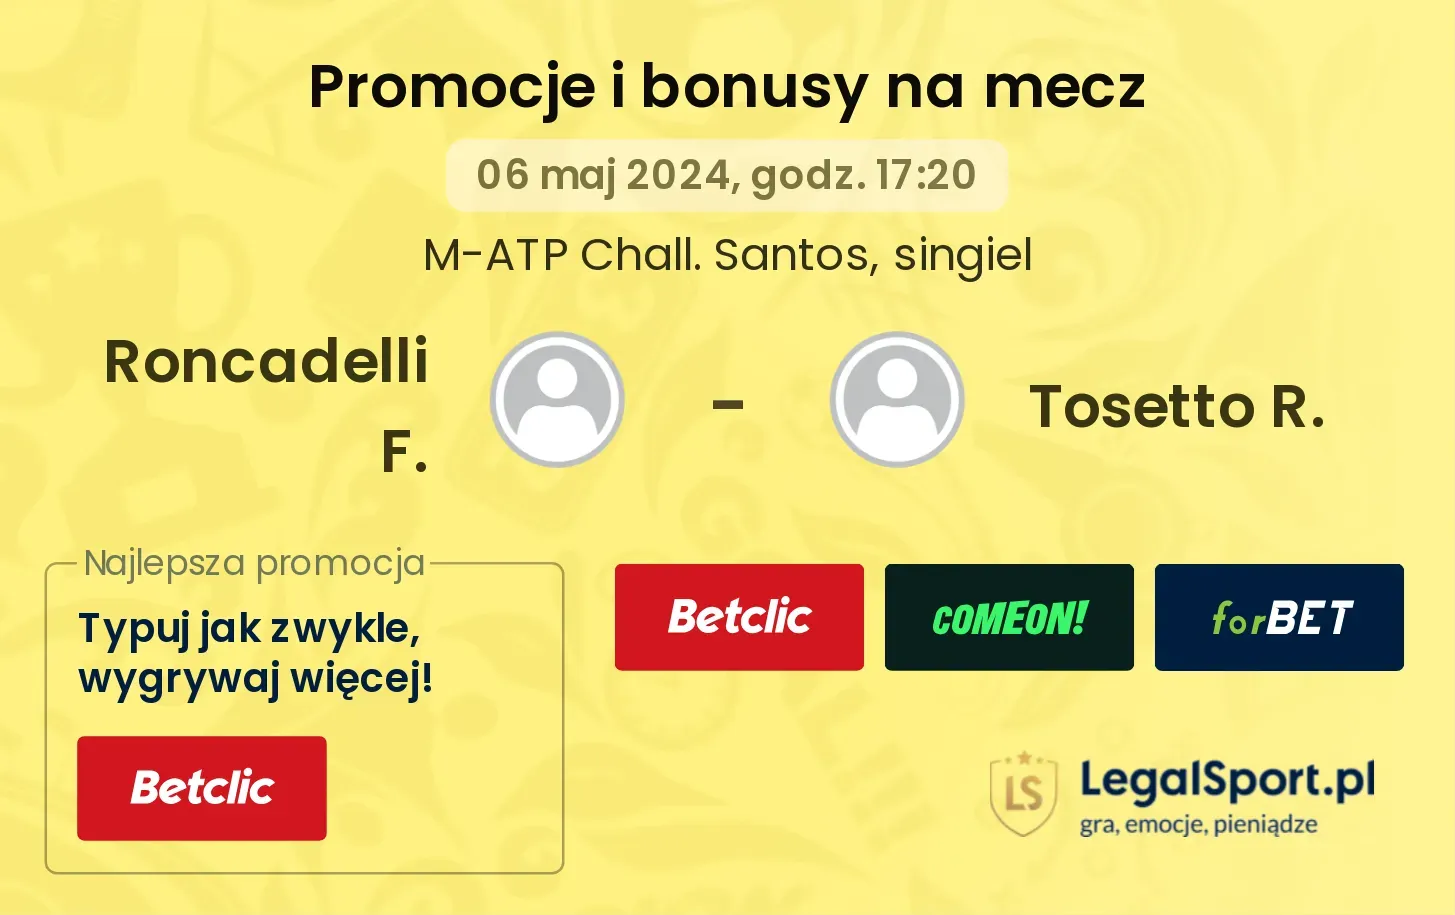 Roncadelli F. - Tosetto R. promocje bonusy na mecz